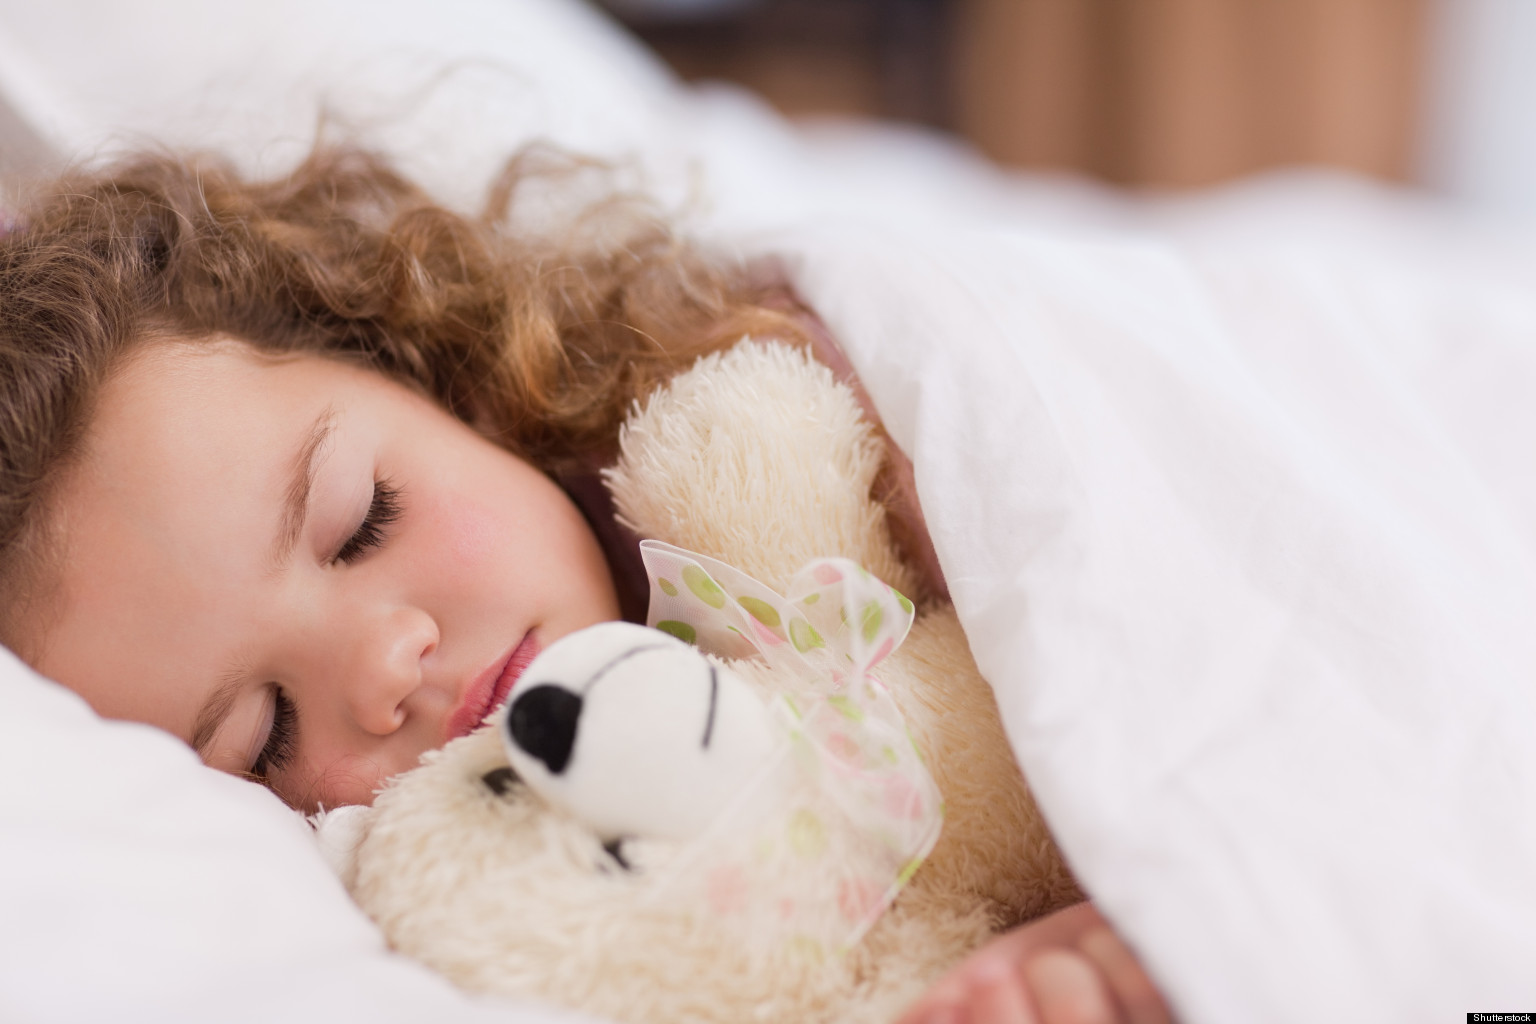 Πόσες ώρες ύπνου χρειάζεται ένα παιδί για να έχει σωστή ανάπτυξη;